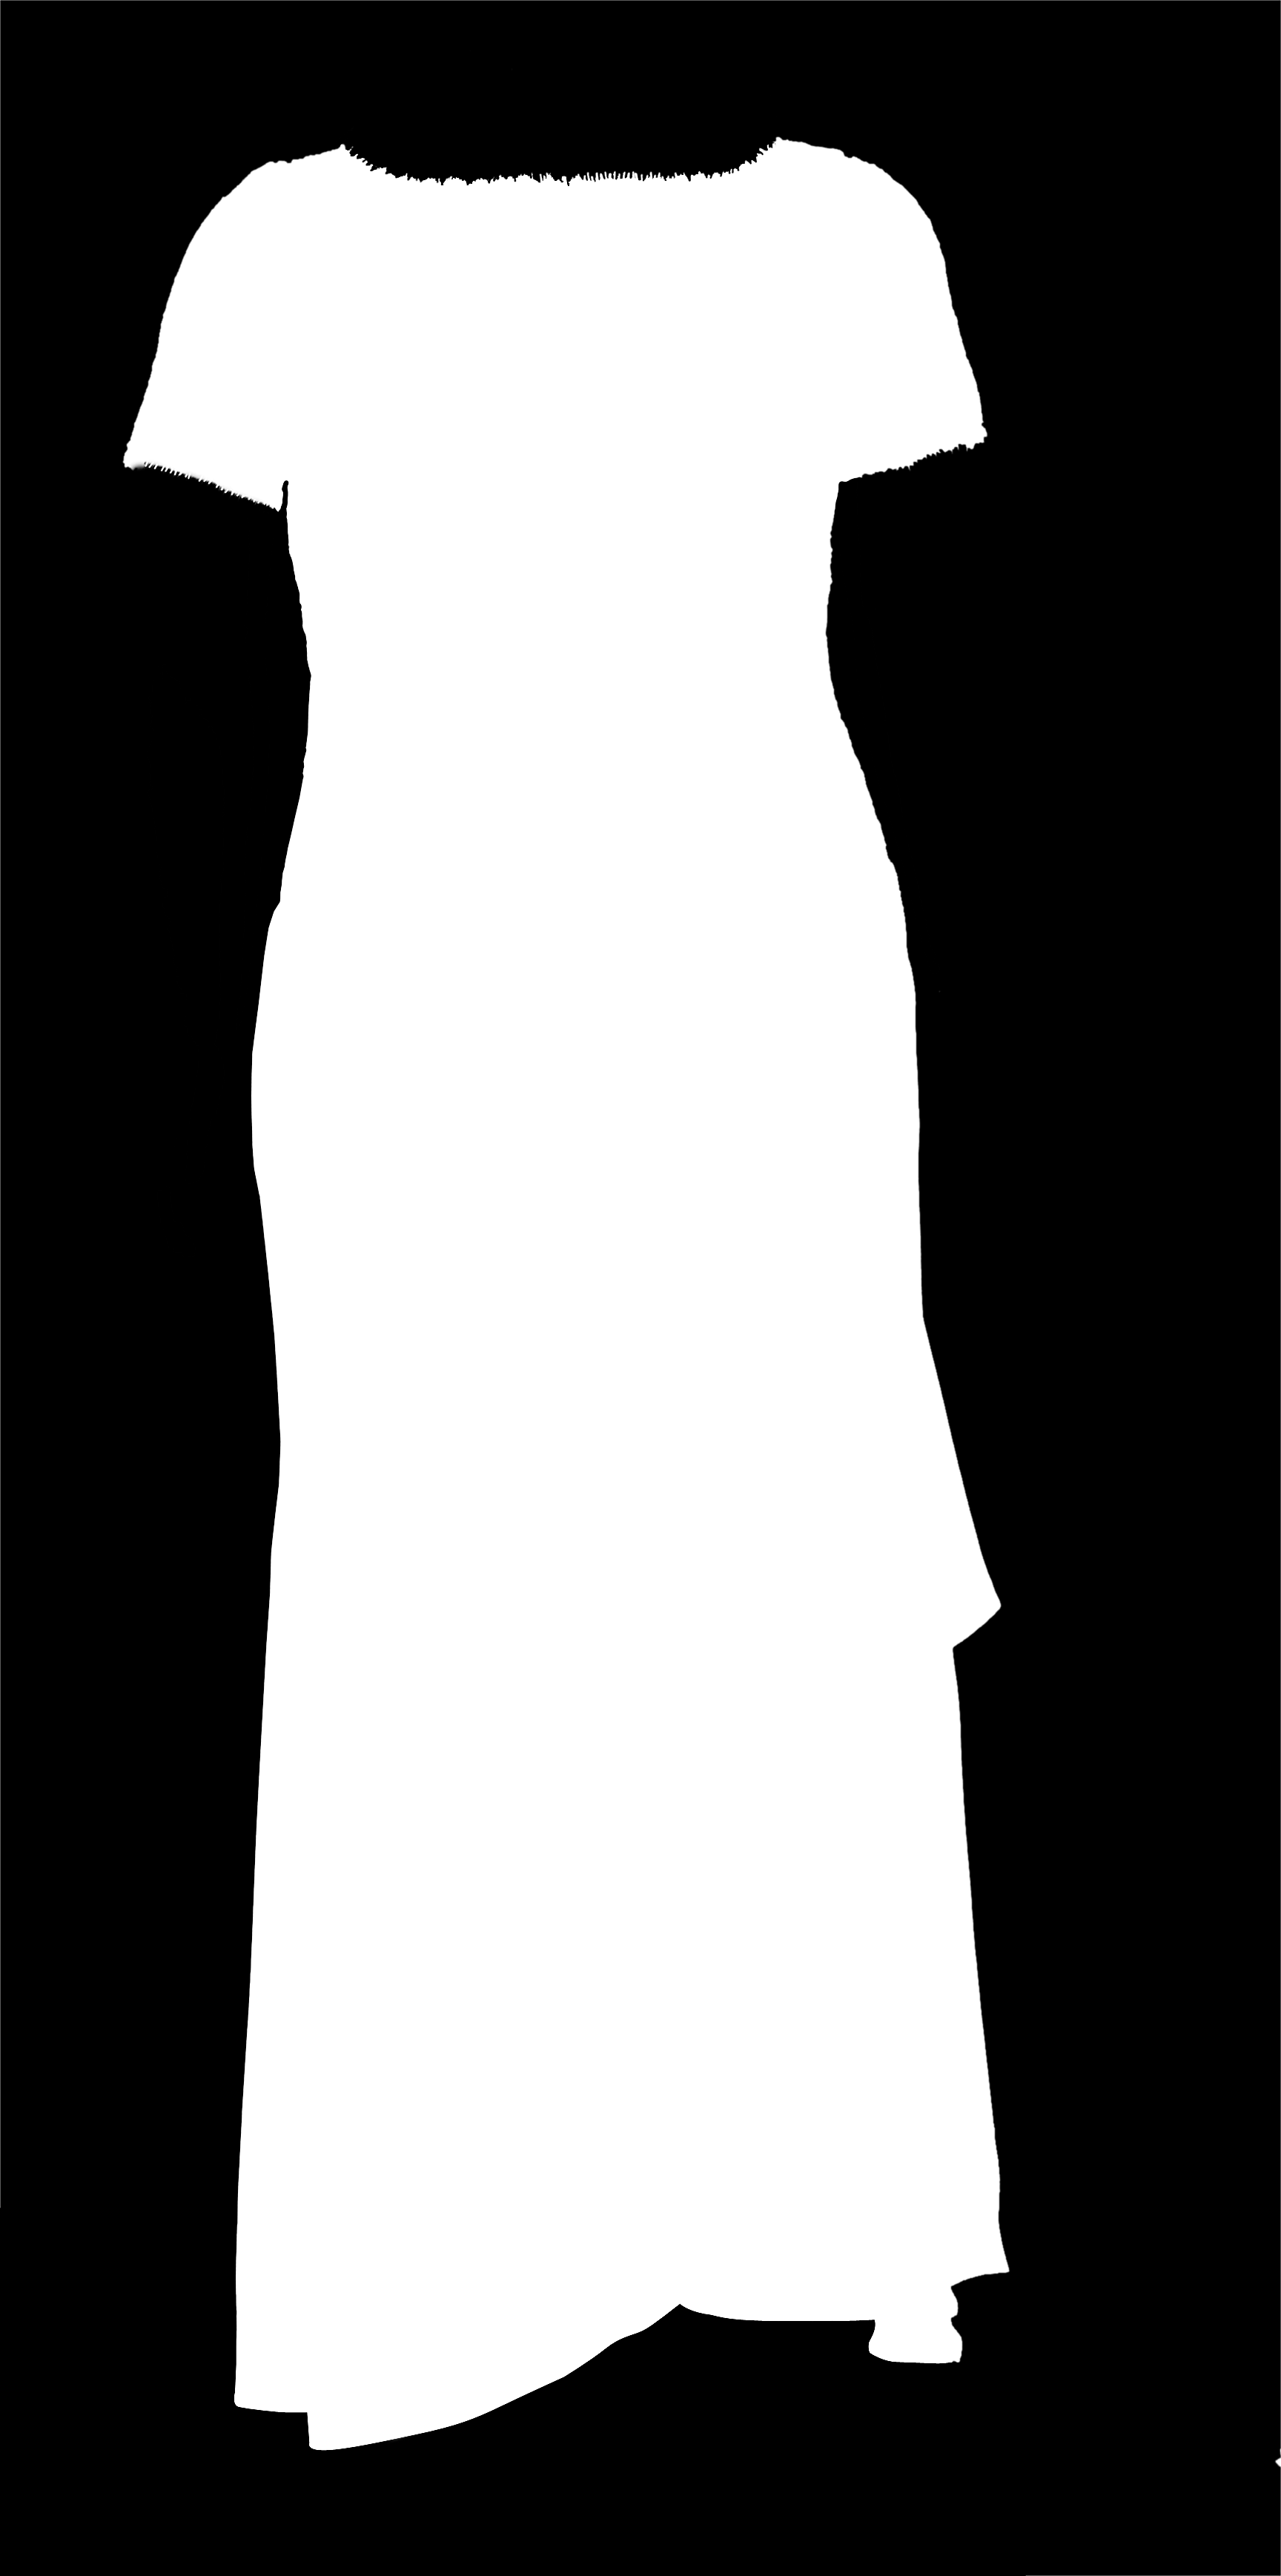 MATERIAL Um zíper invisível de 0 cm; 3,20 m x 1,0 m de cetim de seda para forro; 1,10 m de barbatana; 1,0 cm de entretela; miçangas, paetês e canutilhos.